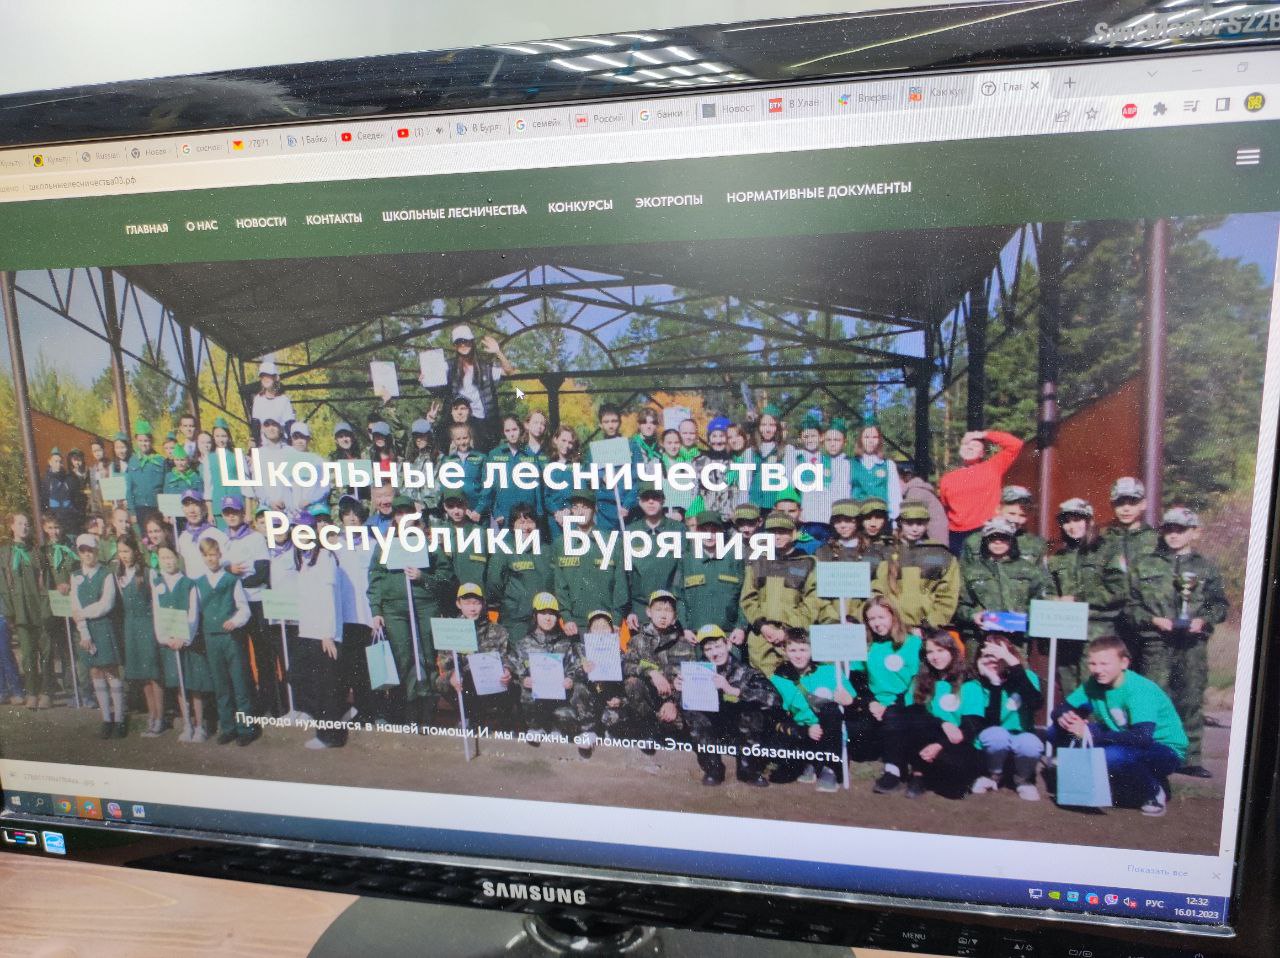 Фото У школьных лесничеств Бурятии заработал свой сайт